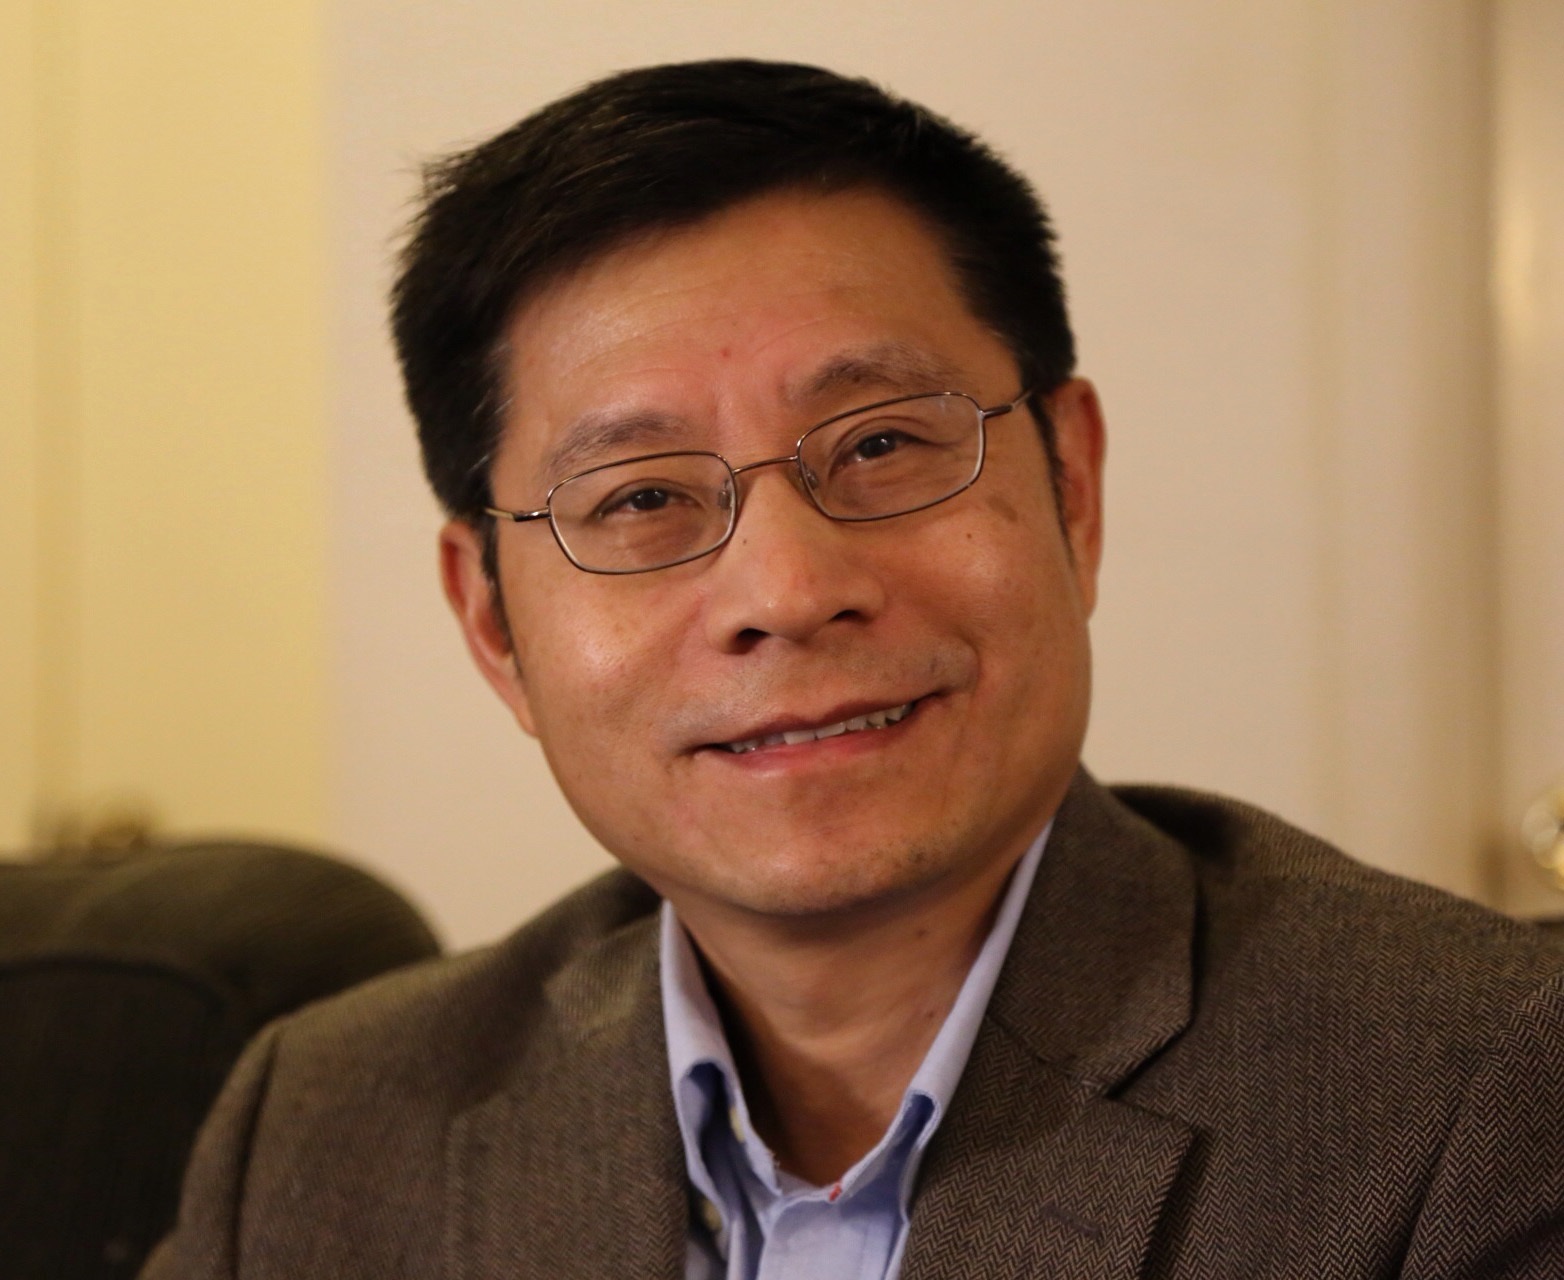 Dr. Charles Wang